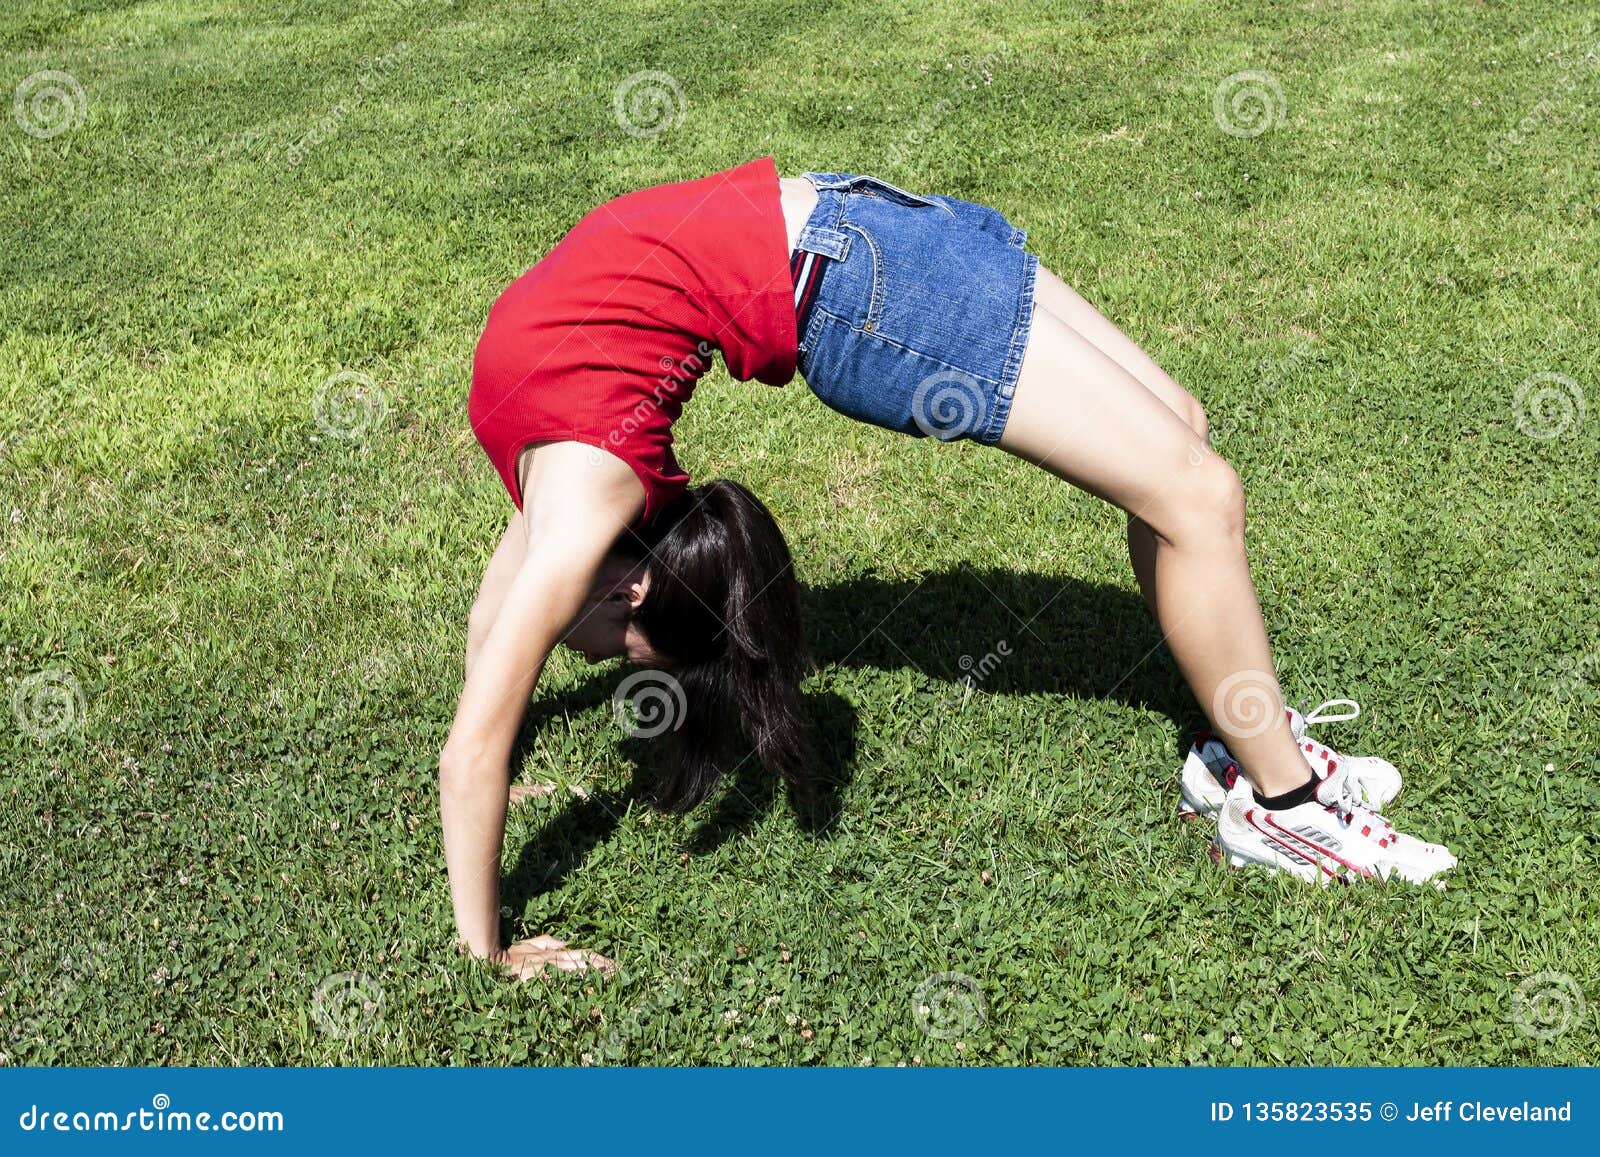 girl bending over backwards